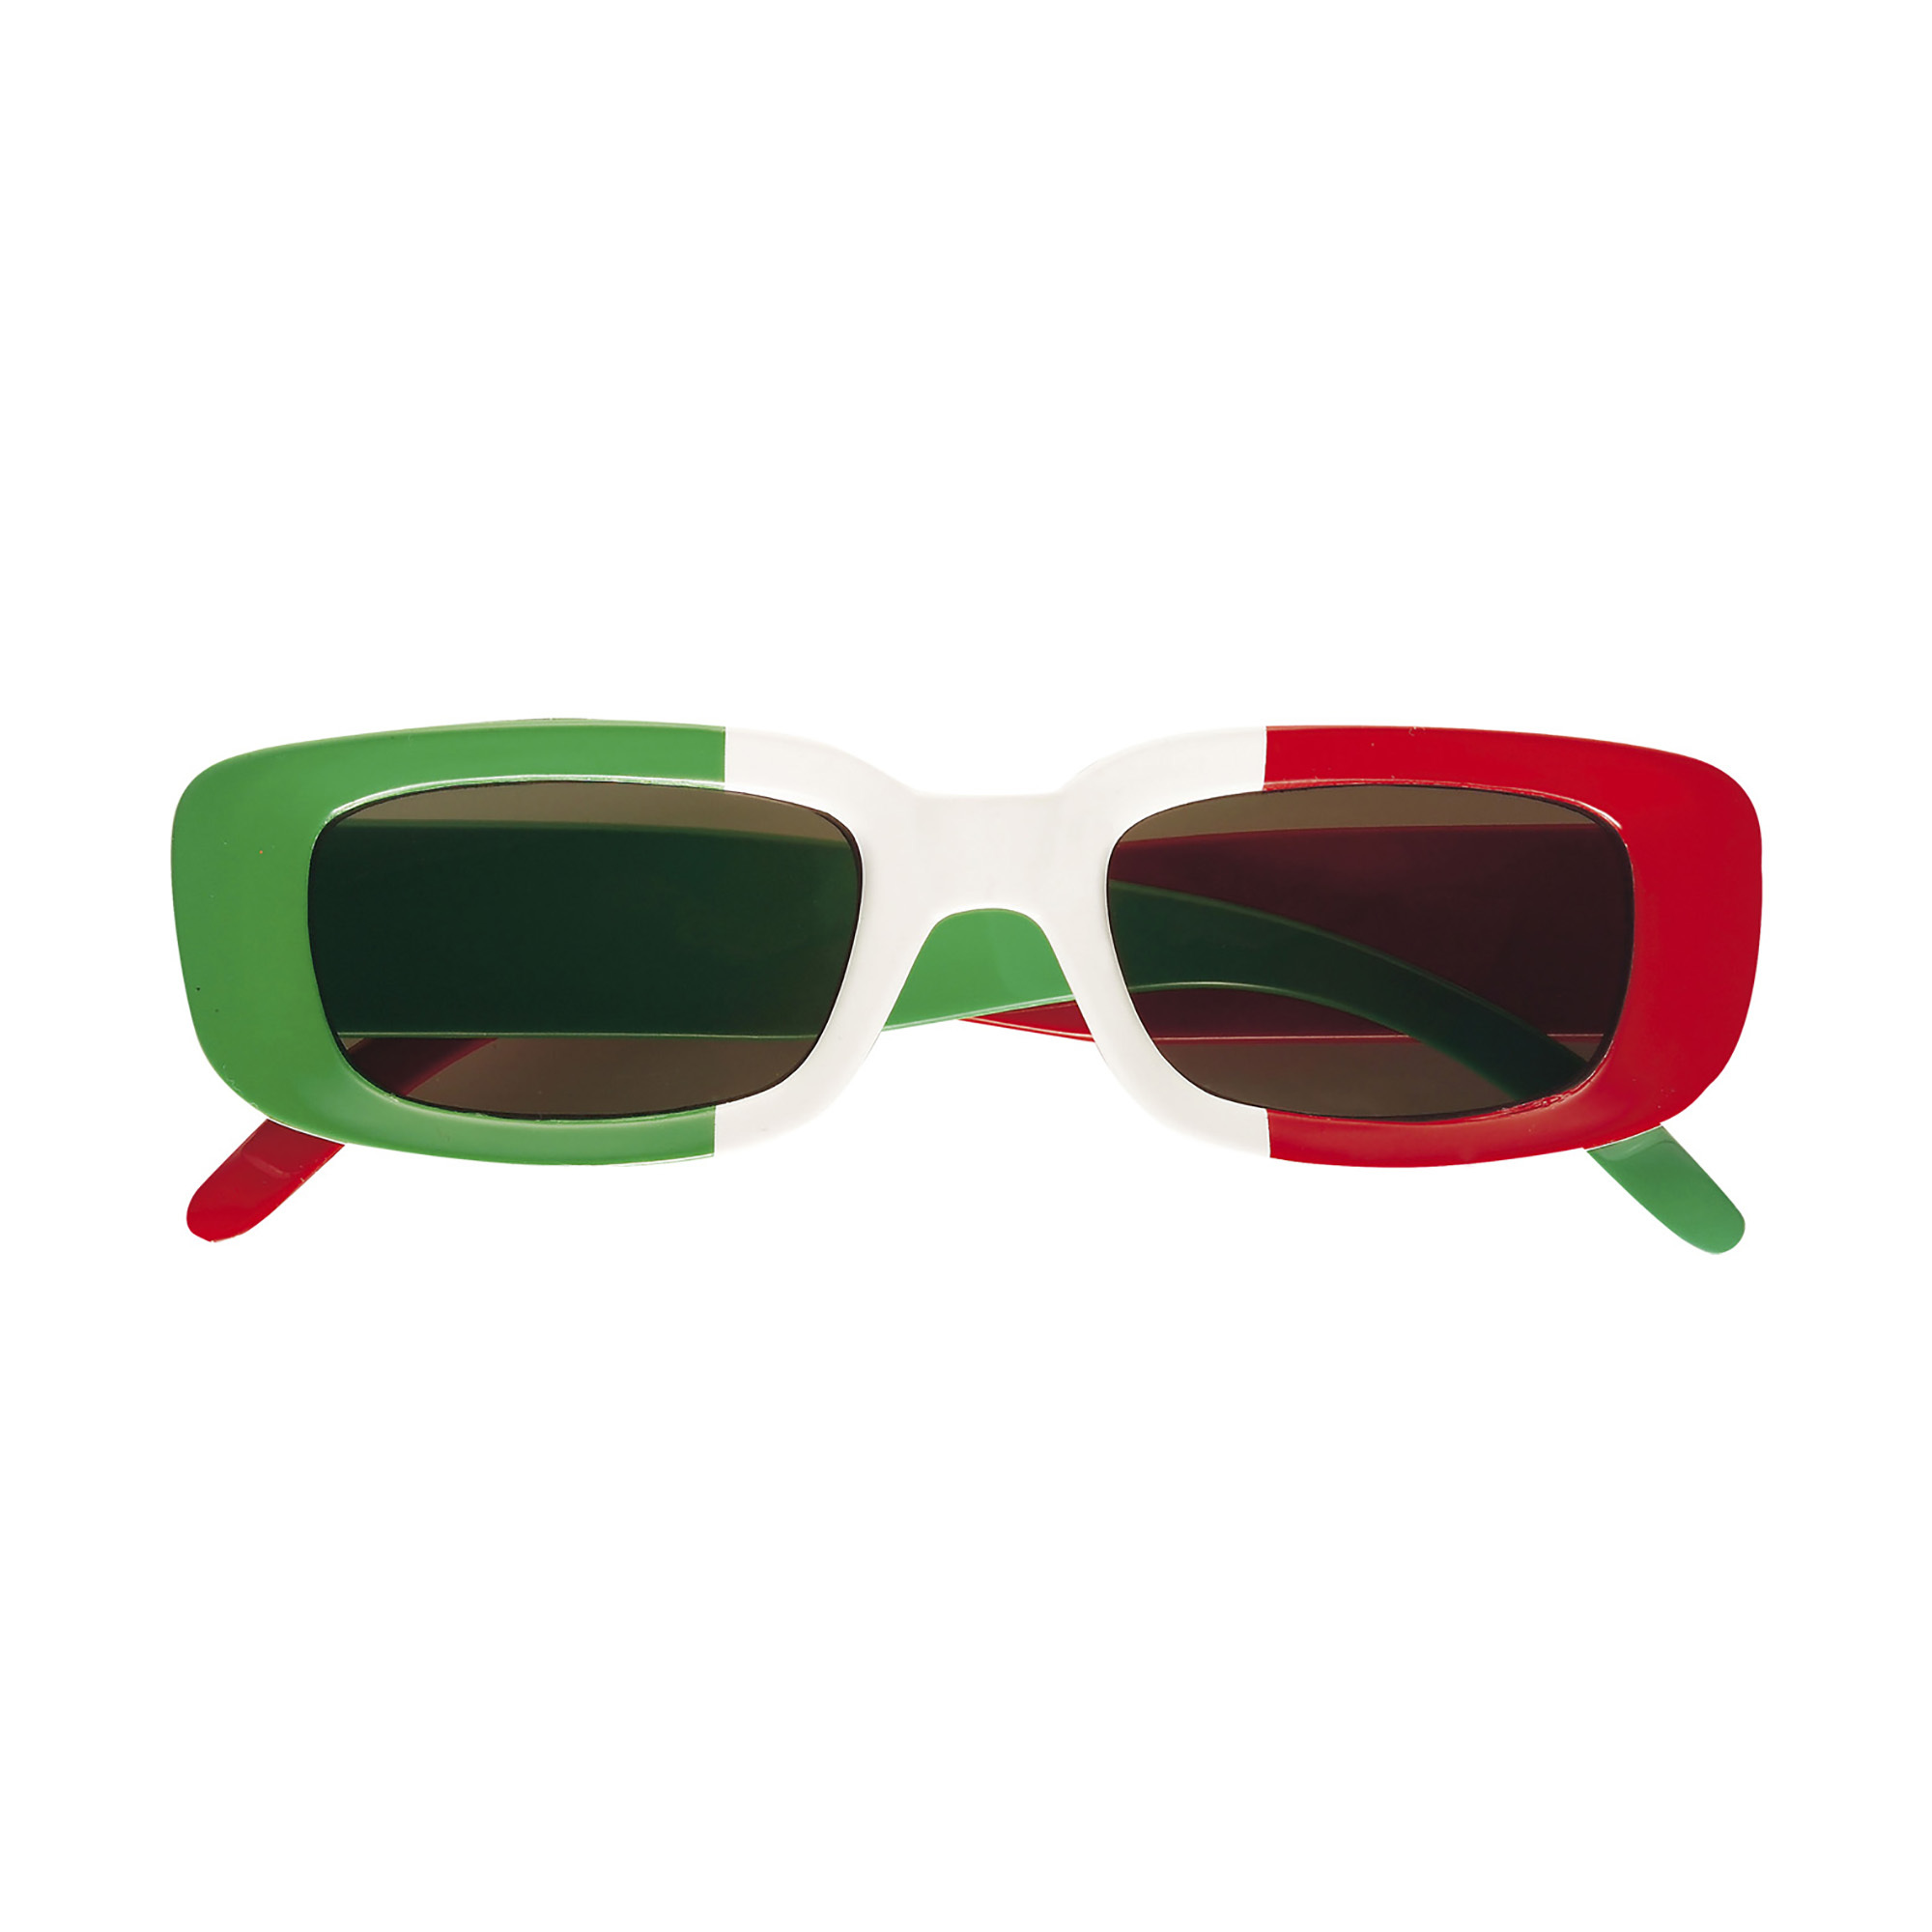 Italiaanse bril met kleuren van de vlag van Italie